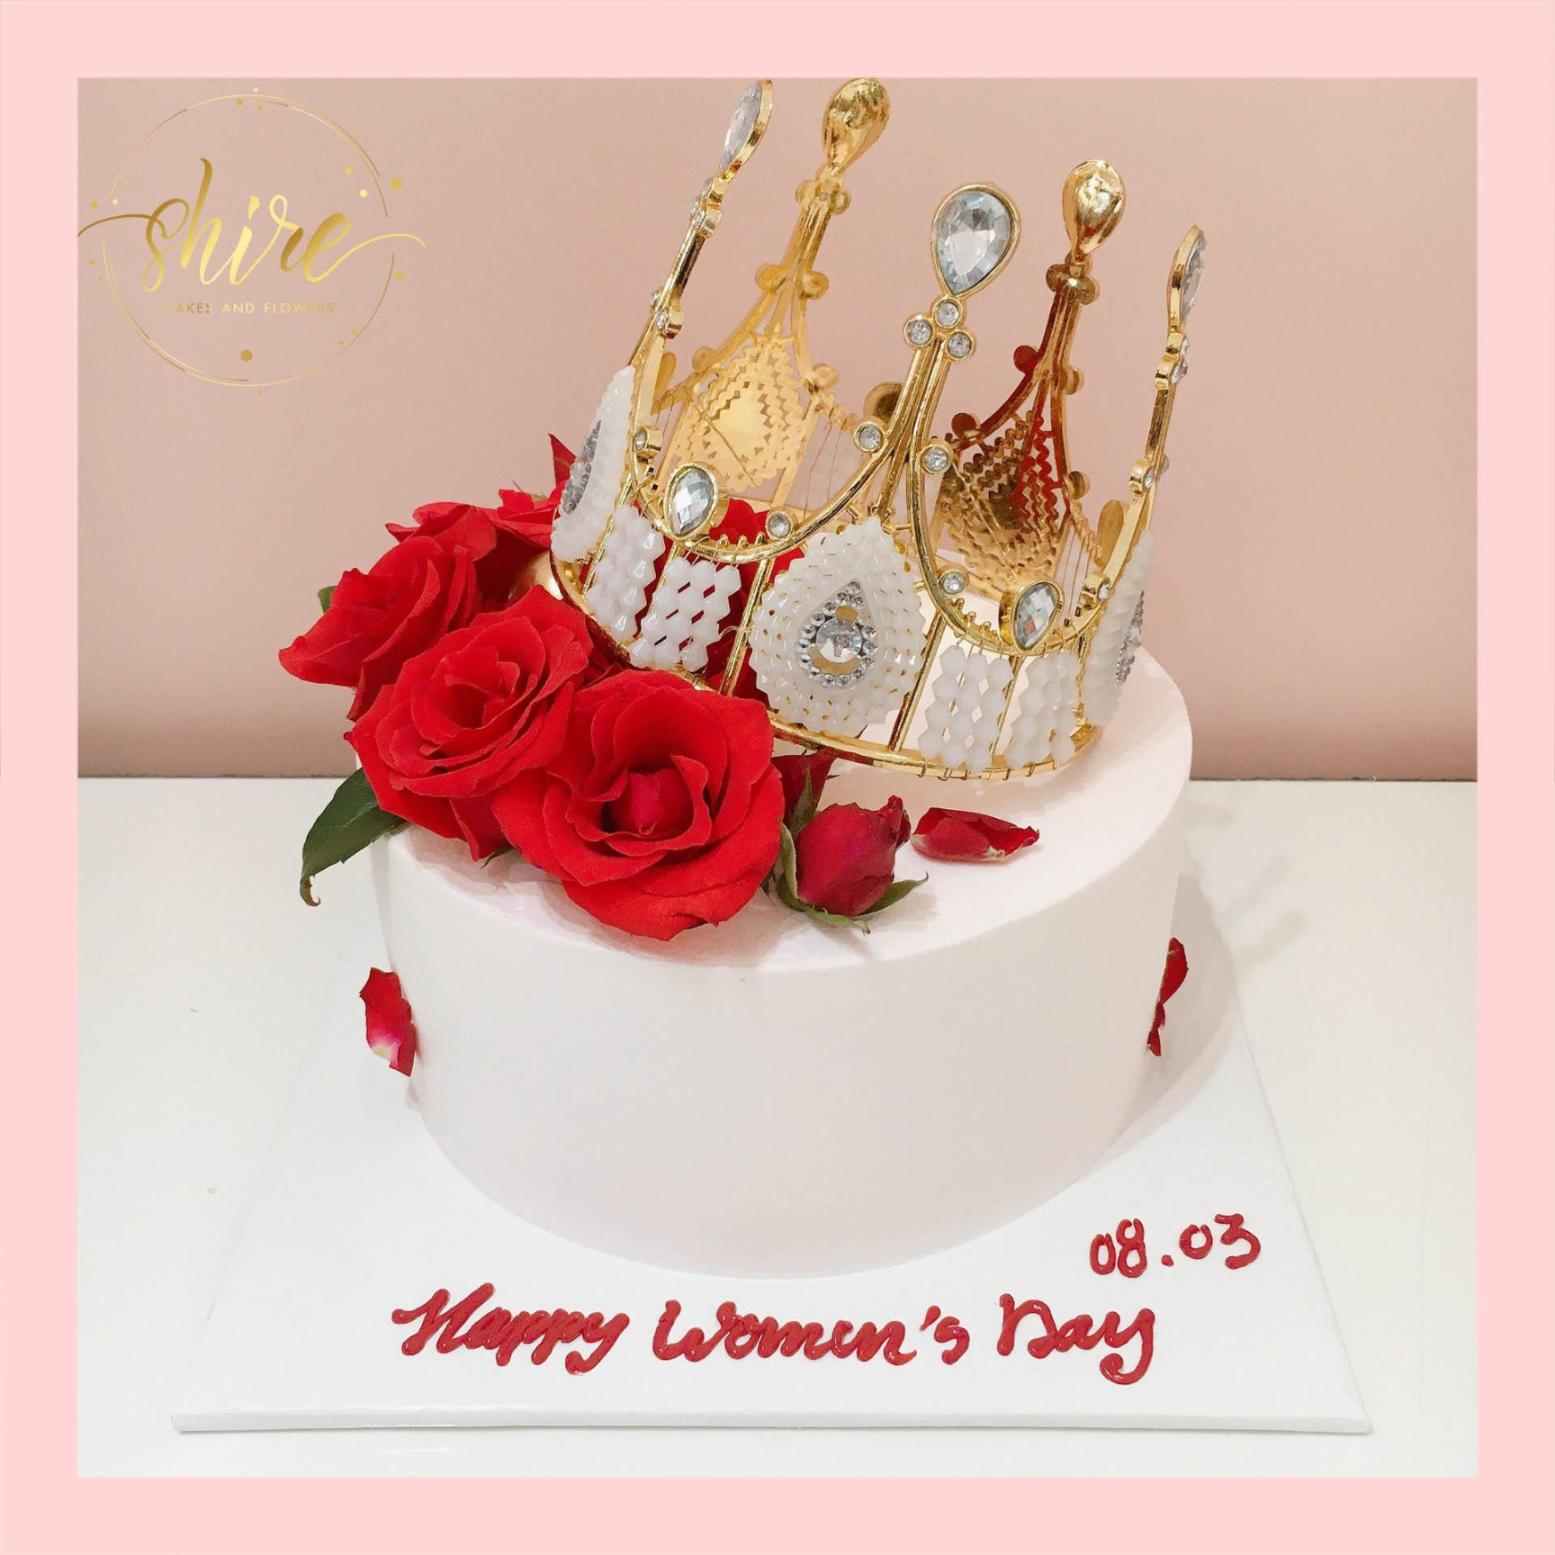 Bánh kem tô điểm vương vãi miện và hoa tươi tỉnh - Bánh kem sinh nhật mang đến nữ